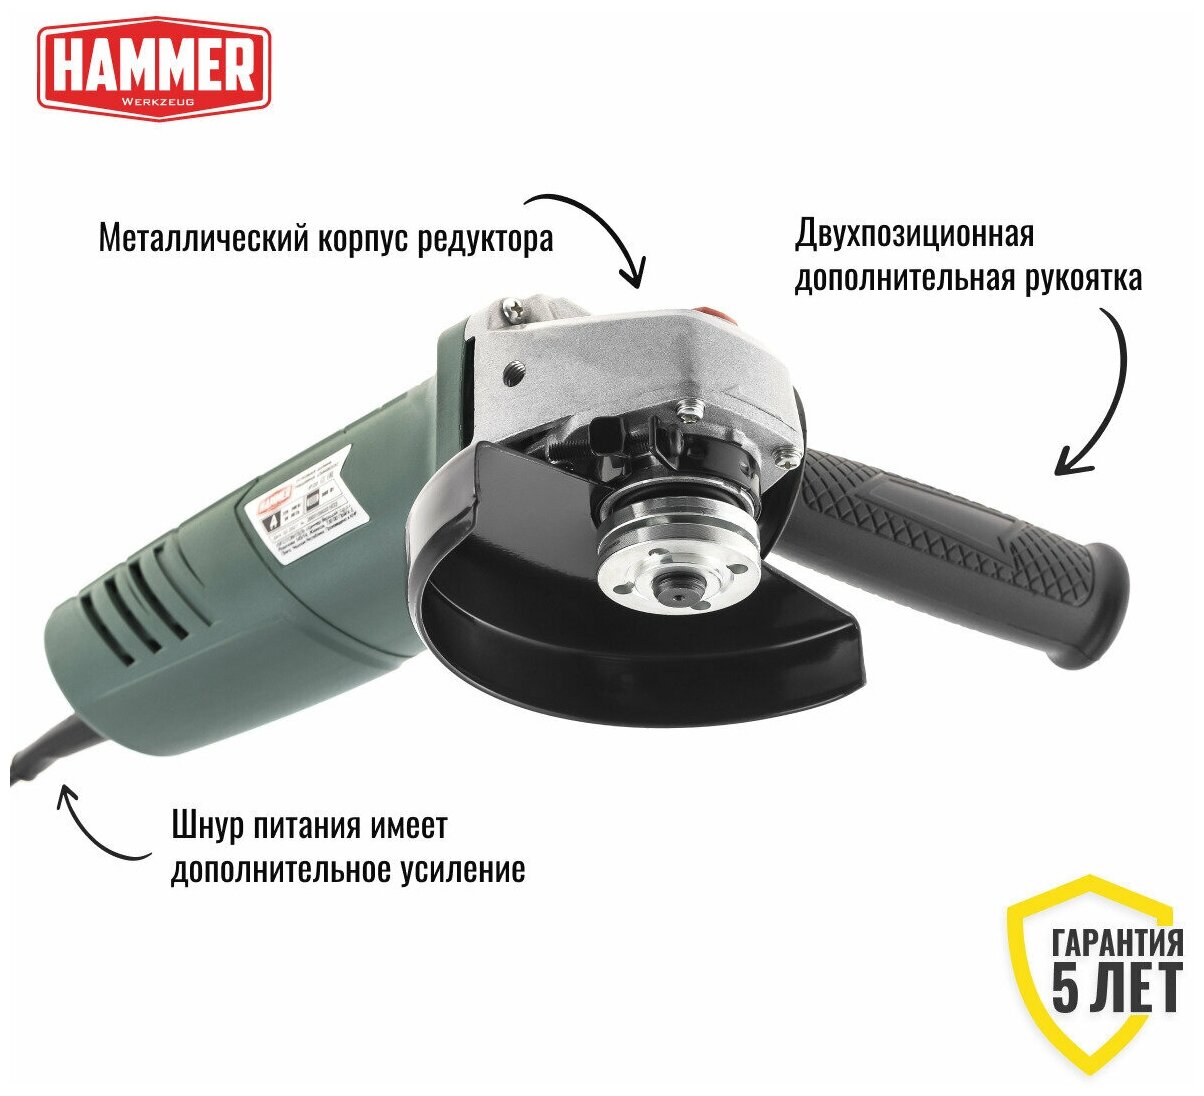 УШМ (болгарка) Hammer - фото №6